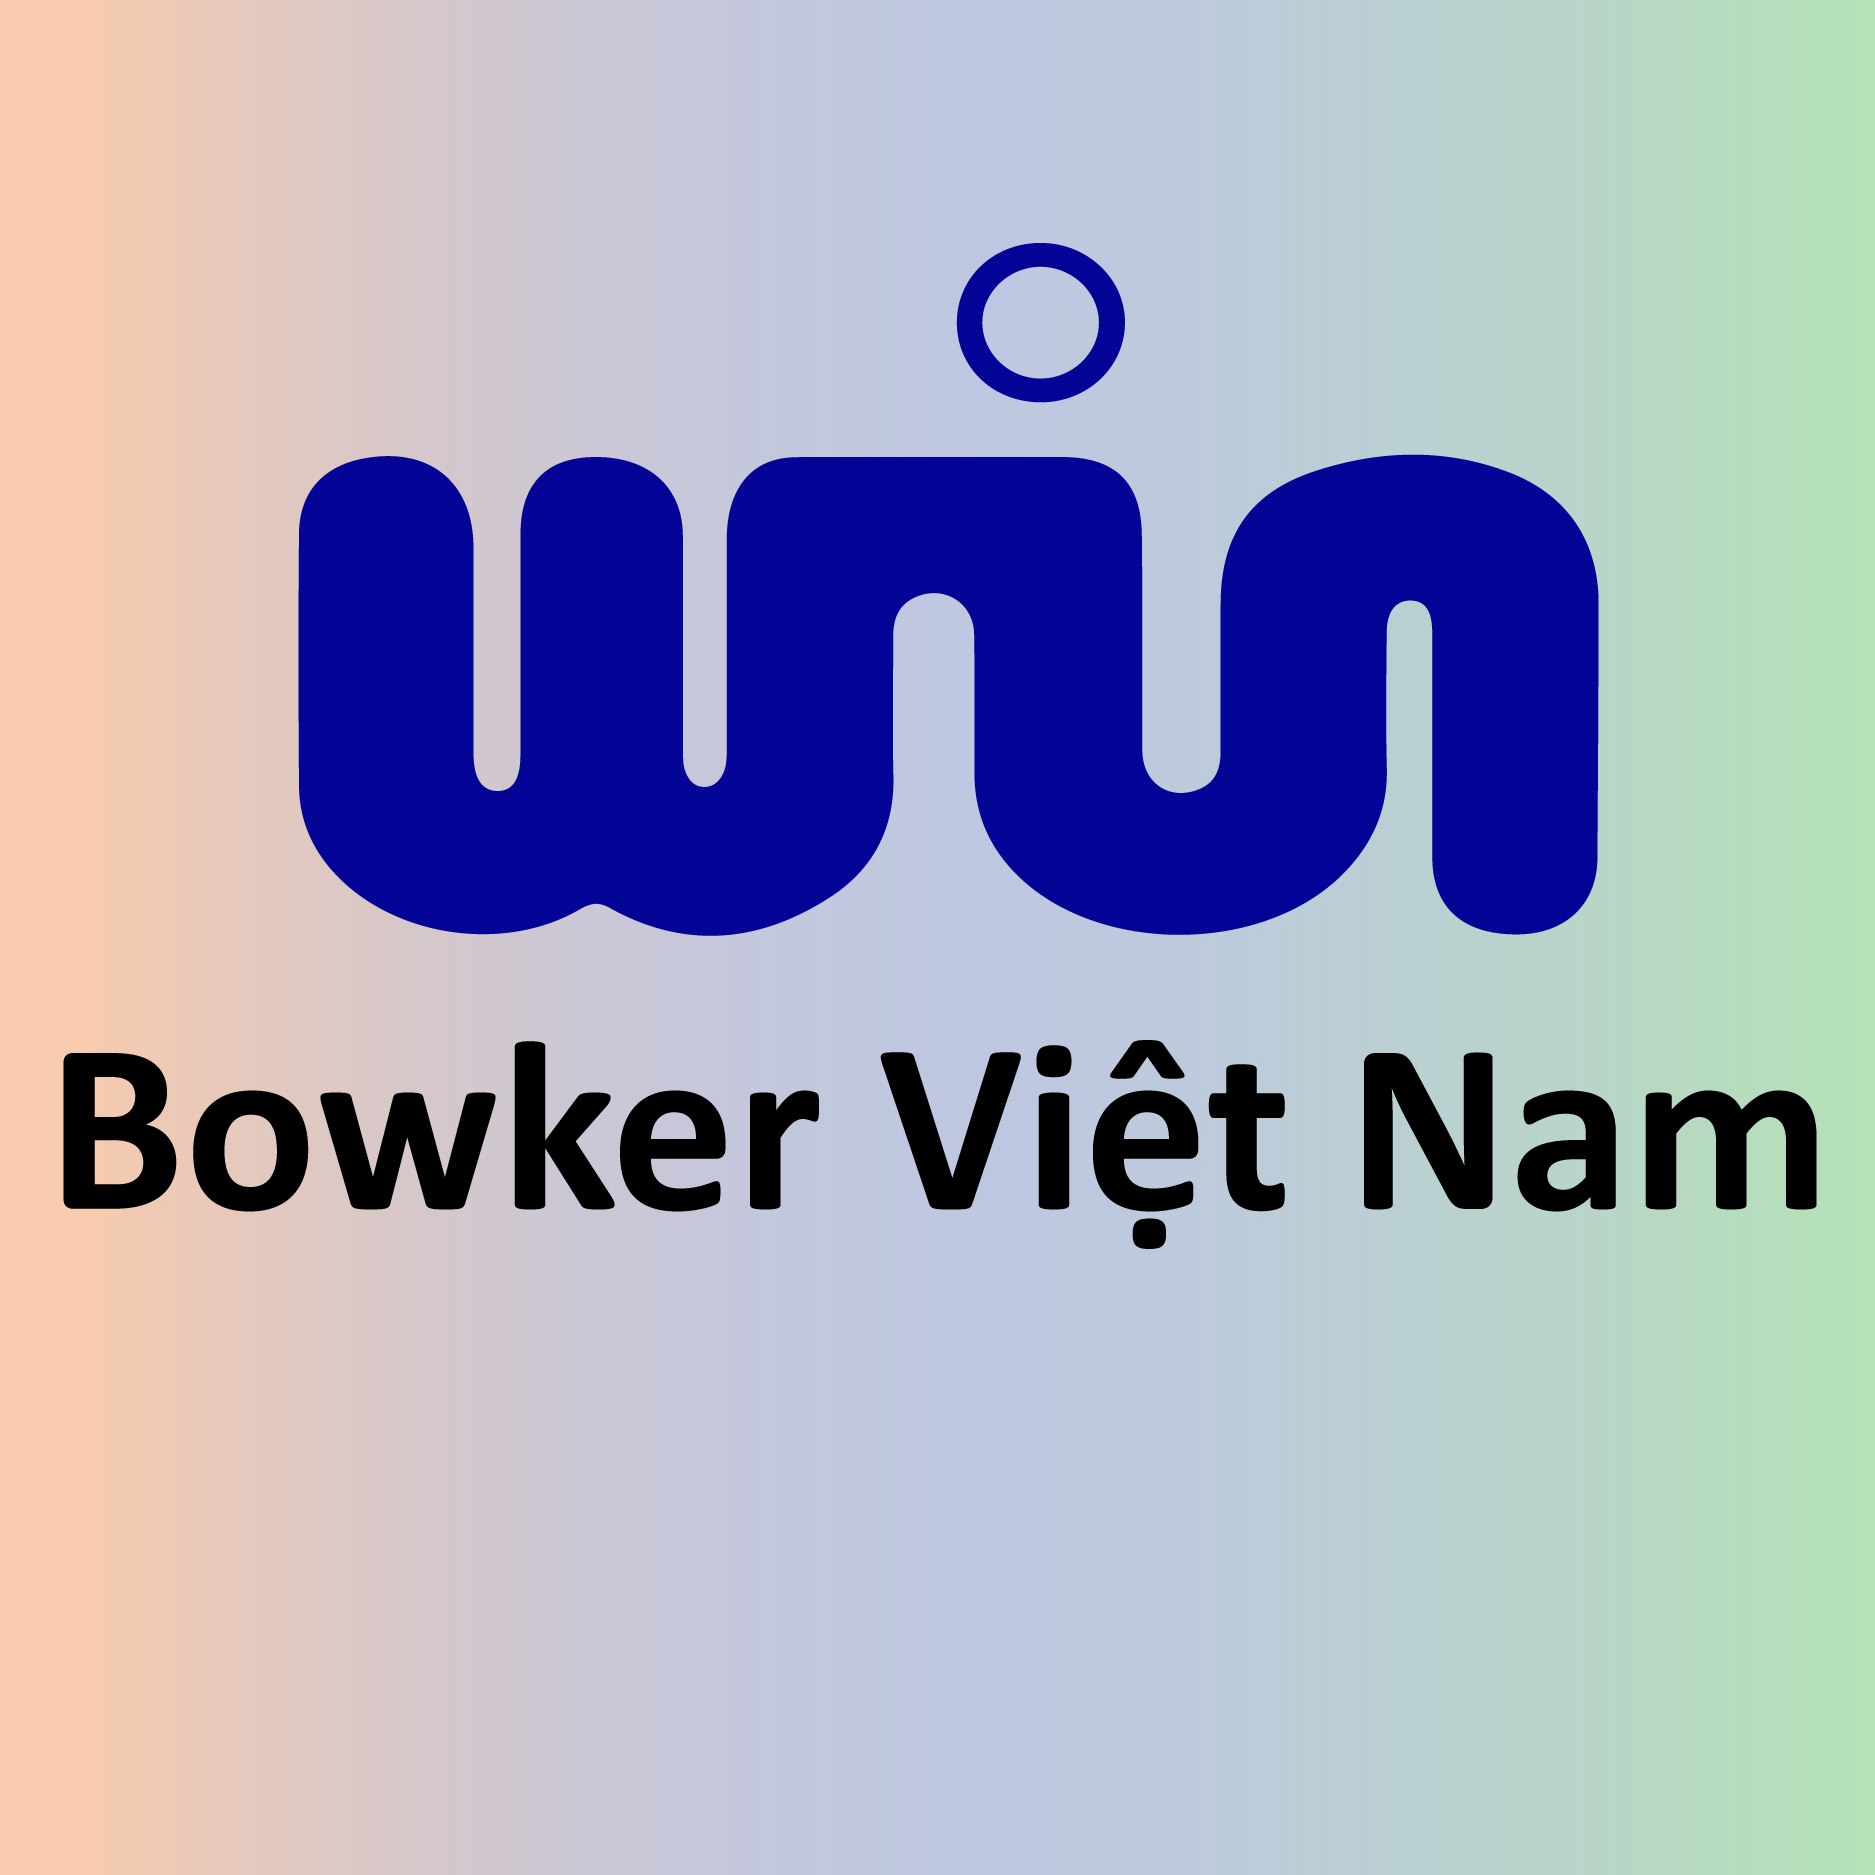 CÔNG TY TNHH MAY MẶC BOWKER VIỆT NAM - TẬP ĐOÀN WINHANVERKY